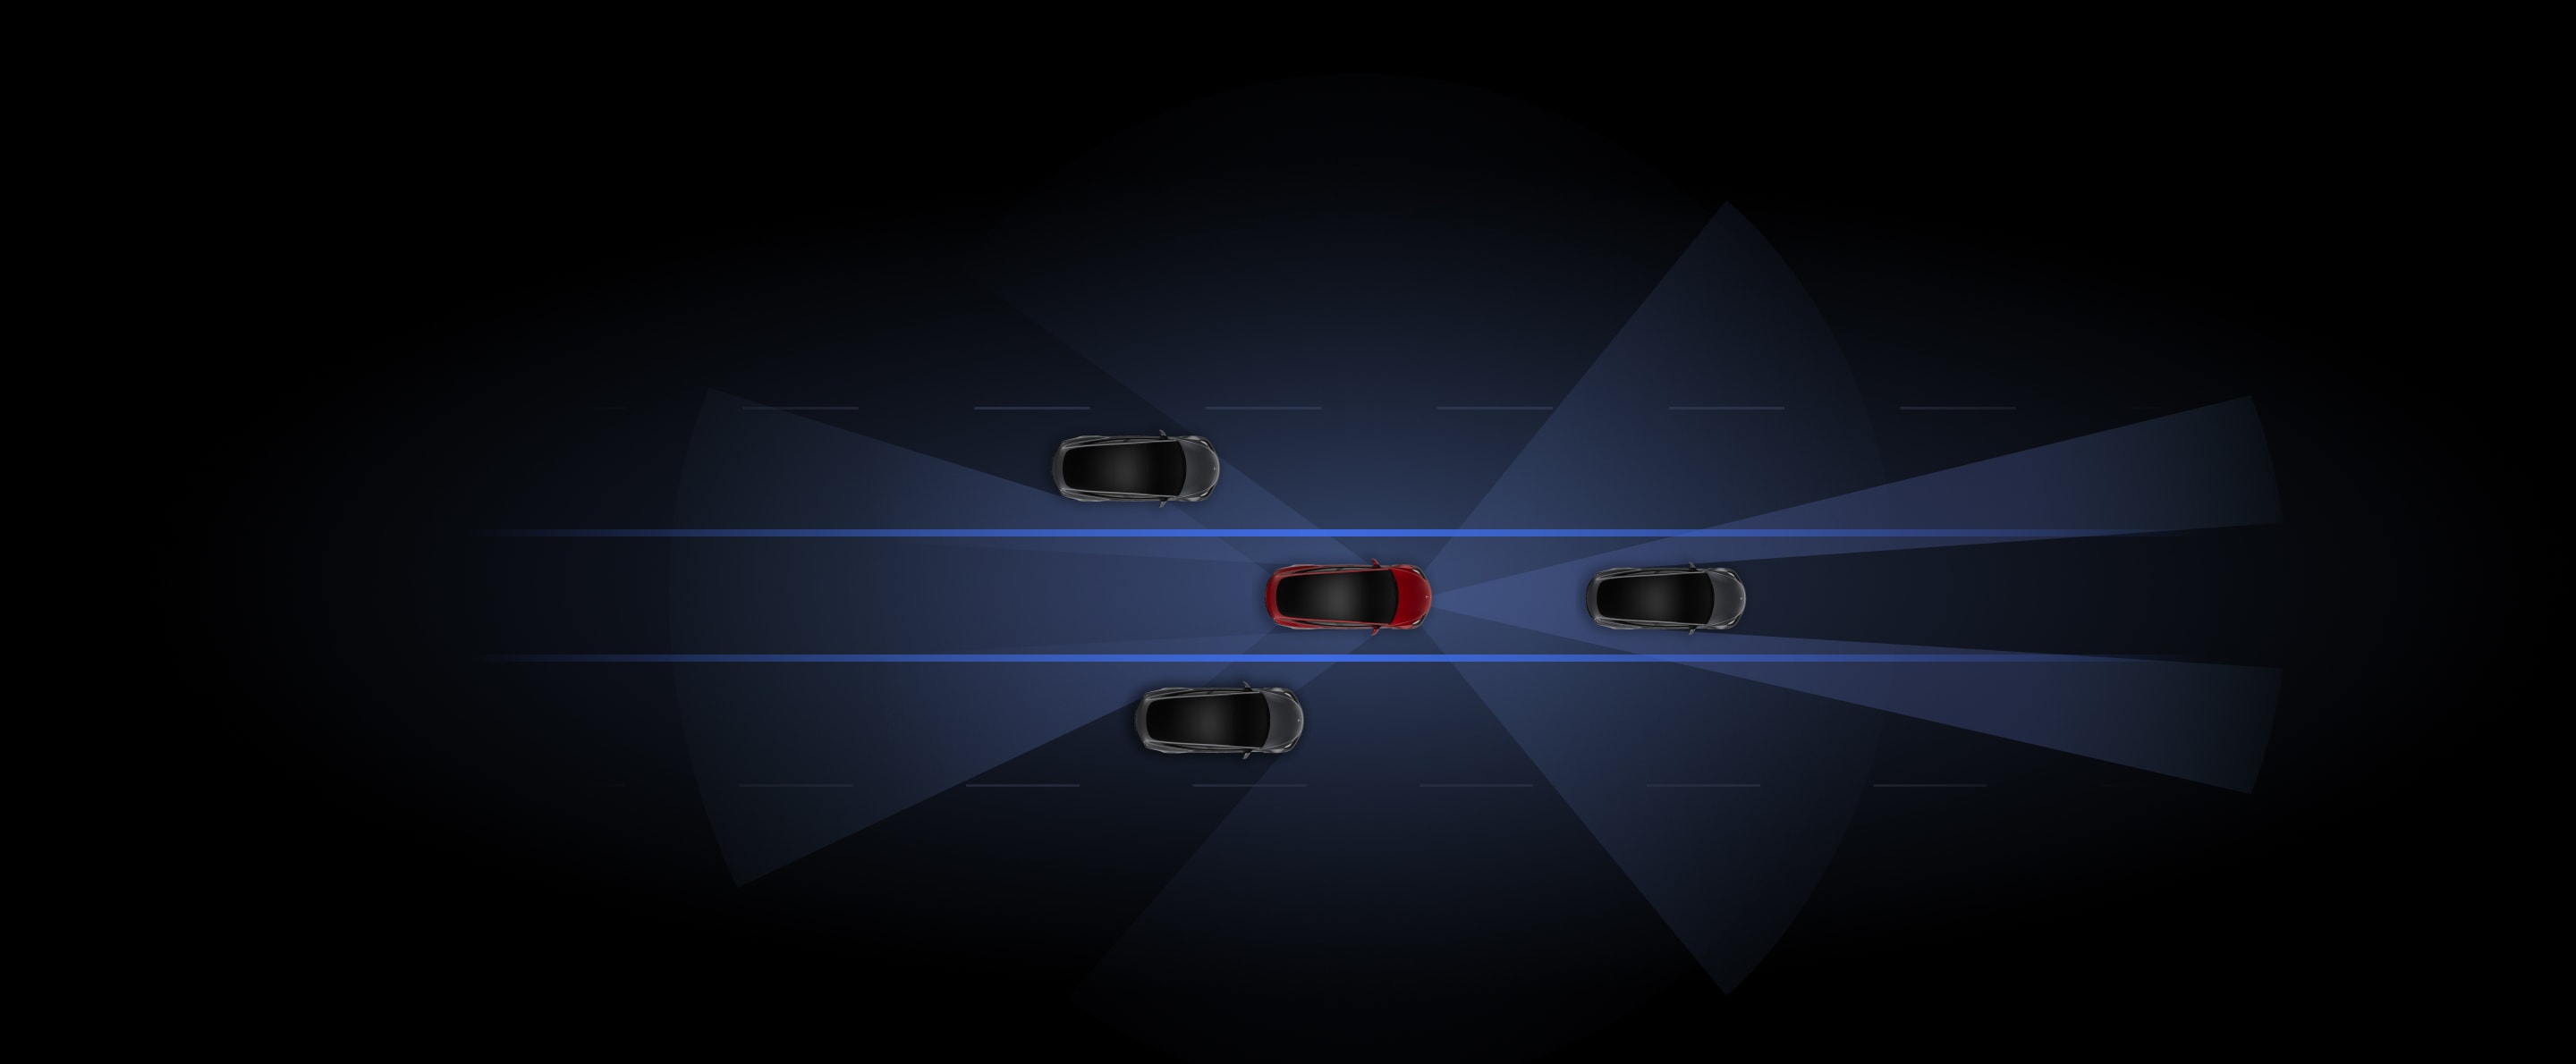 使用「Autopilot 自動輔助駕駛」的灰色和紅色 Tesla 車輛渲染圖。 